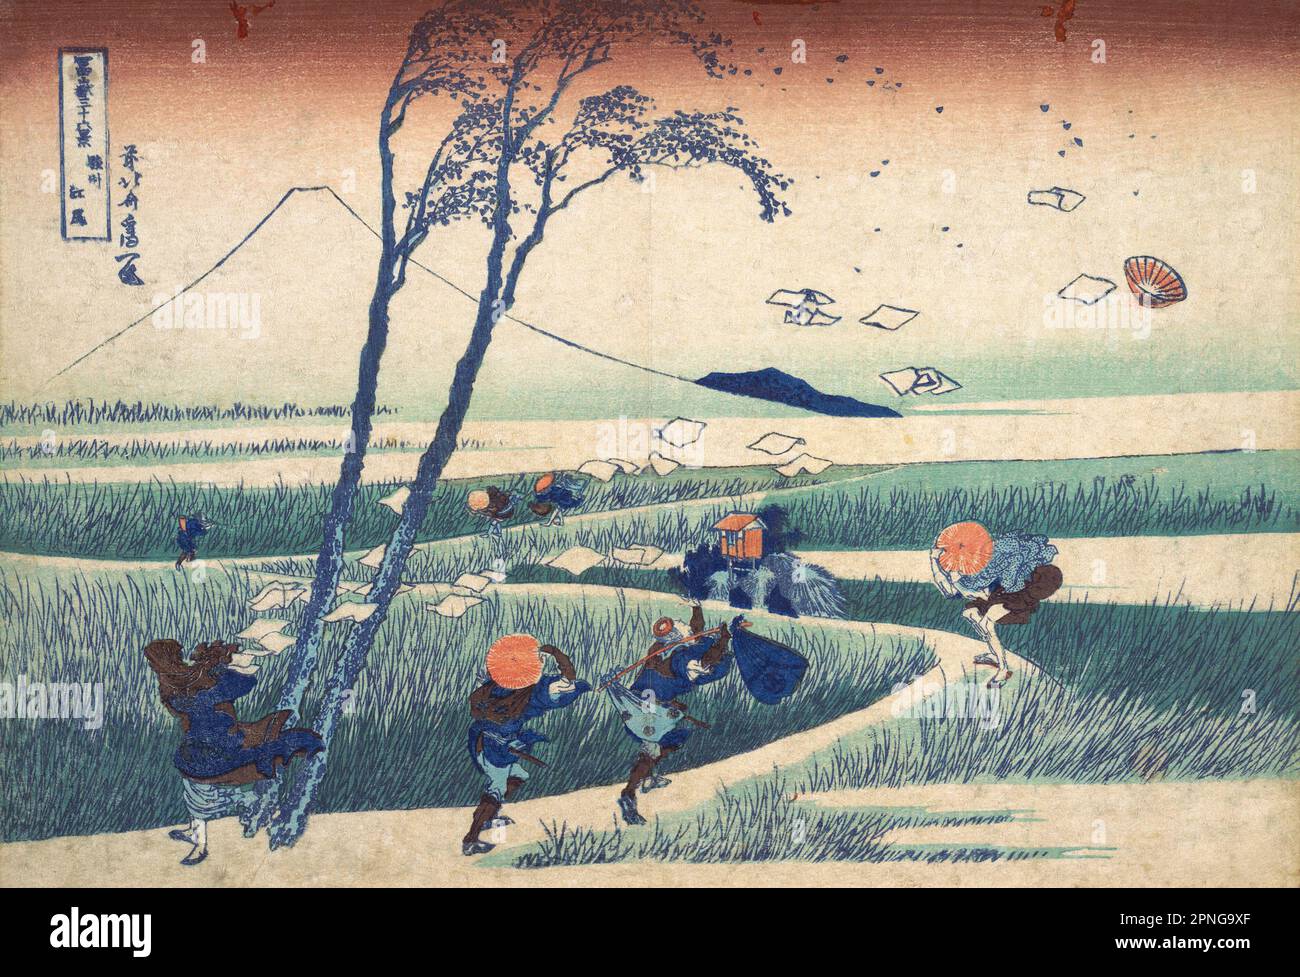 Giappone: «Ejiri nella provincia di Suruga». Ukiyo-e stampa in blocco della serie «trentasei viste del Monte Fuji» di Katsushika Hokusai (31 ottobre 1760 - 10 maggio 1849), 1830. “trentasei viste del Monte Fuji” è una serie di stampe in legno realizzate dall’artista giapponese Katsushika Hokusai. La serie raffigura il Monte Fuji in stagioni e condizioni meteorologiche diverse da una varietà di luoghi e distanze. Si compone di 46 stampe create tra il 1826 e il 1833. I primi 36 sono stati inclusi nella pubblicazione originale e, a causa della loro popolarità, altri 10 sono stati aggiunti dopo la pubblicazione originale. Foto Stock